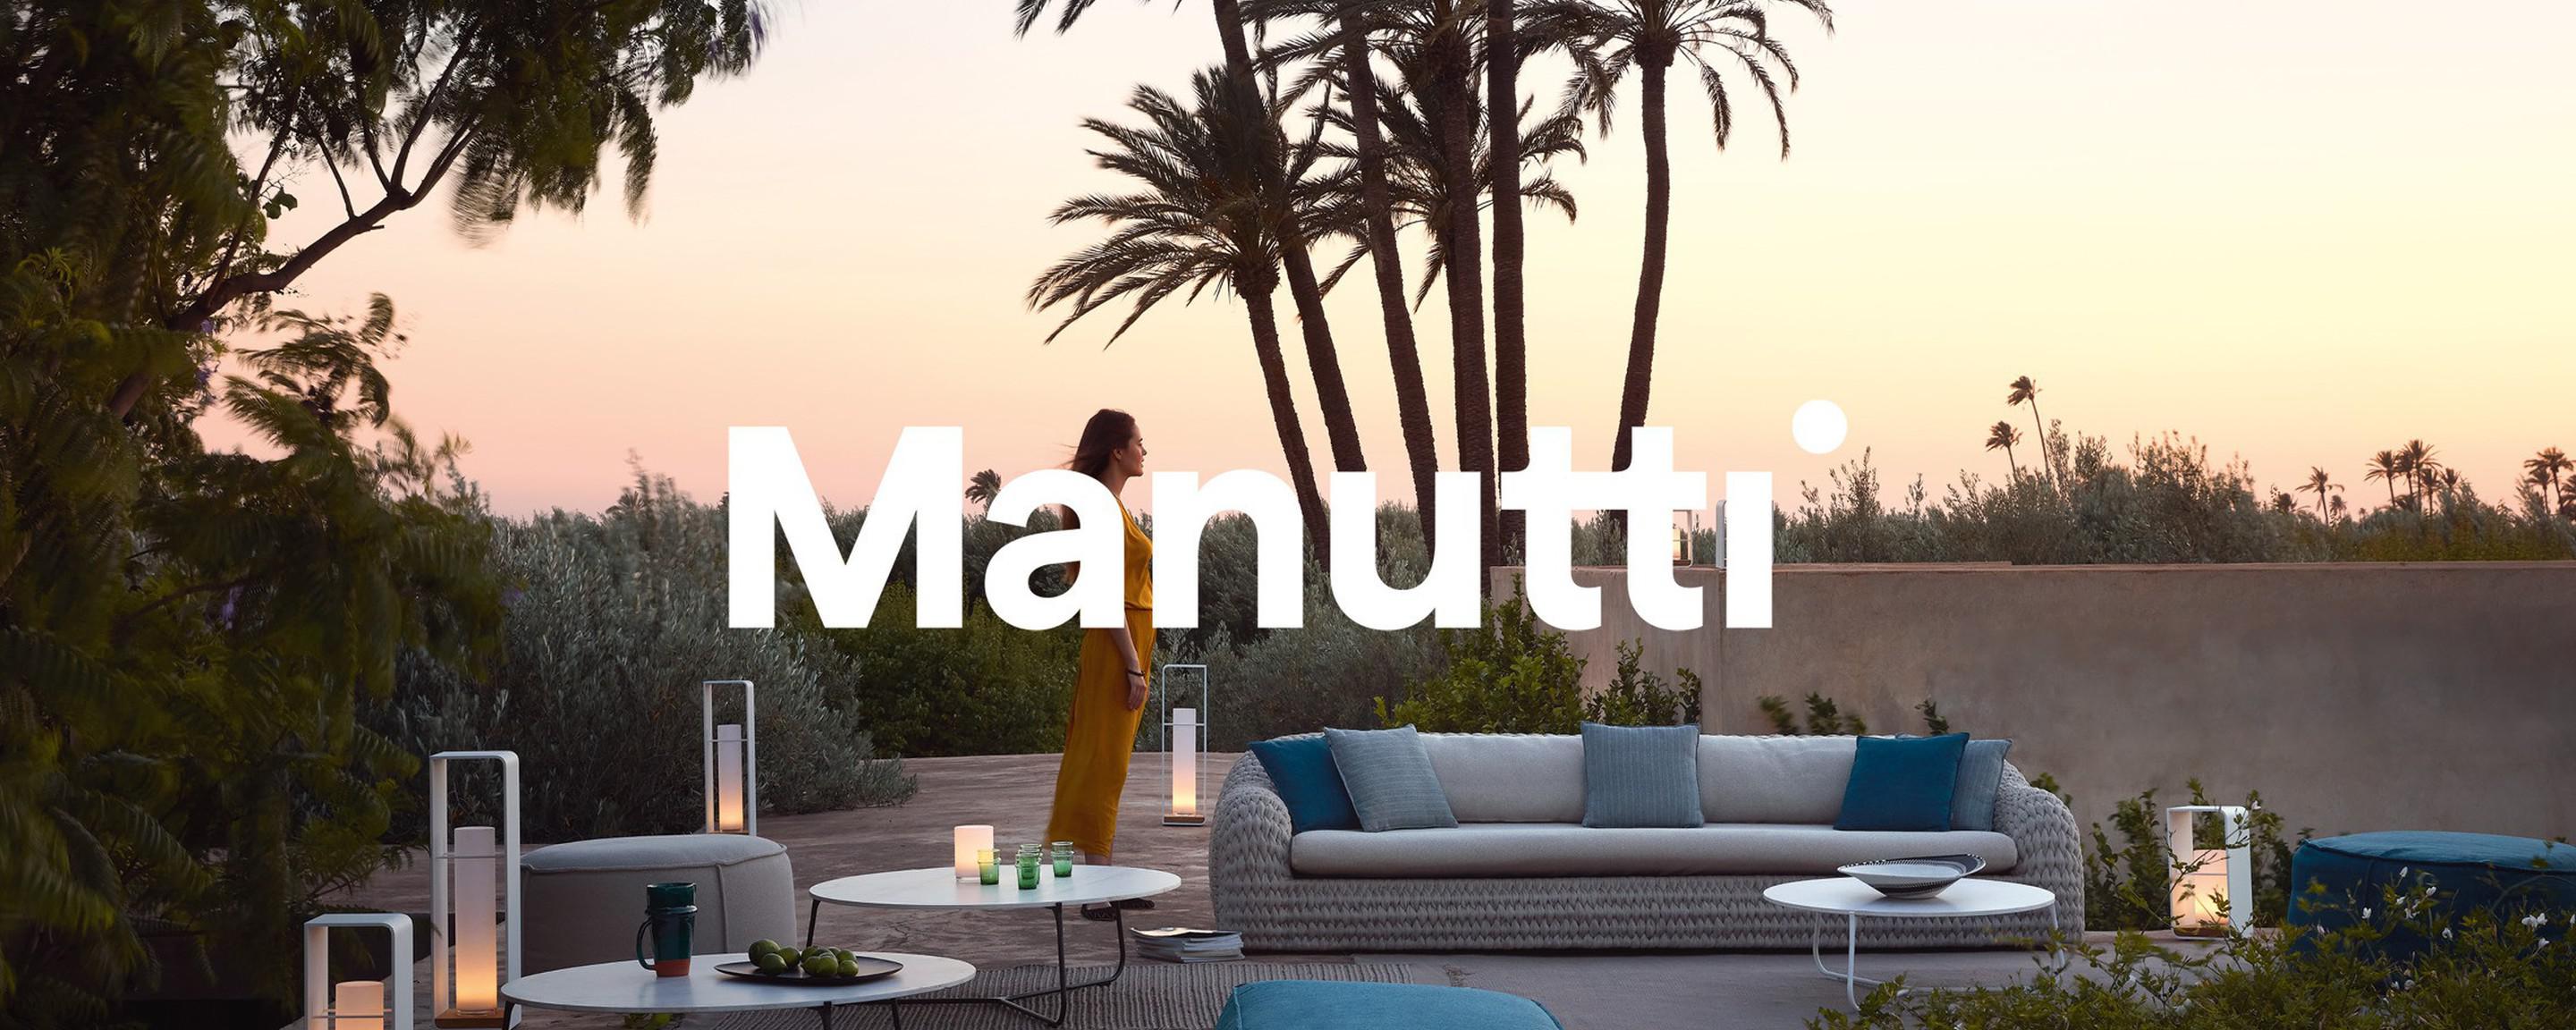 Manutti lanceert nieuwe merkidentiteit